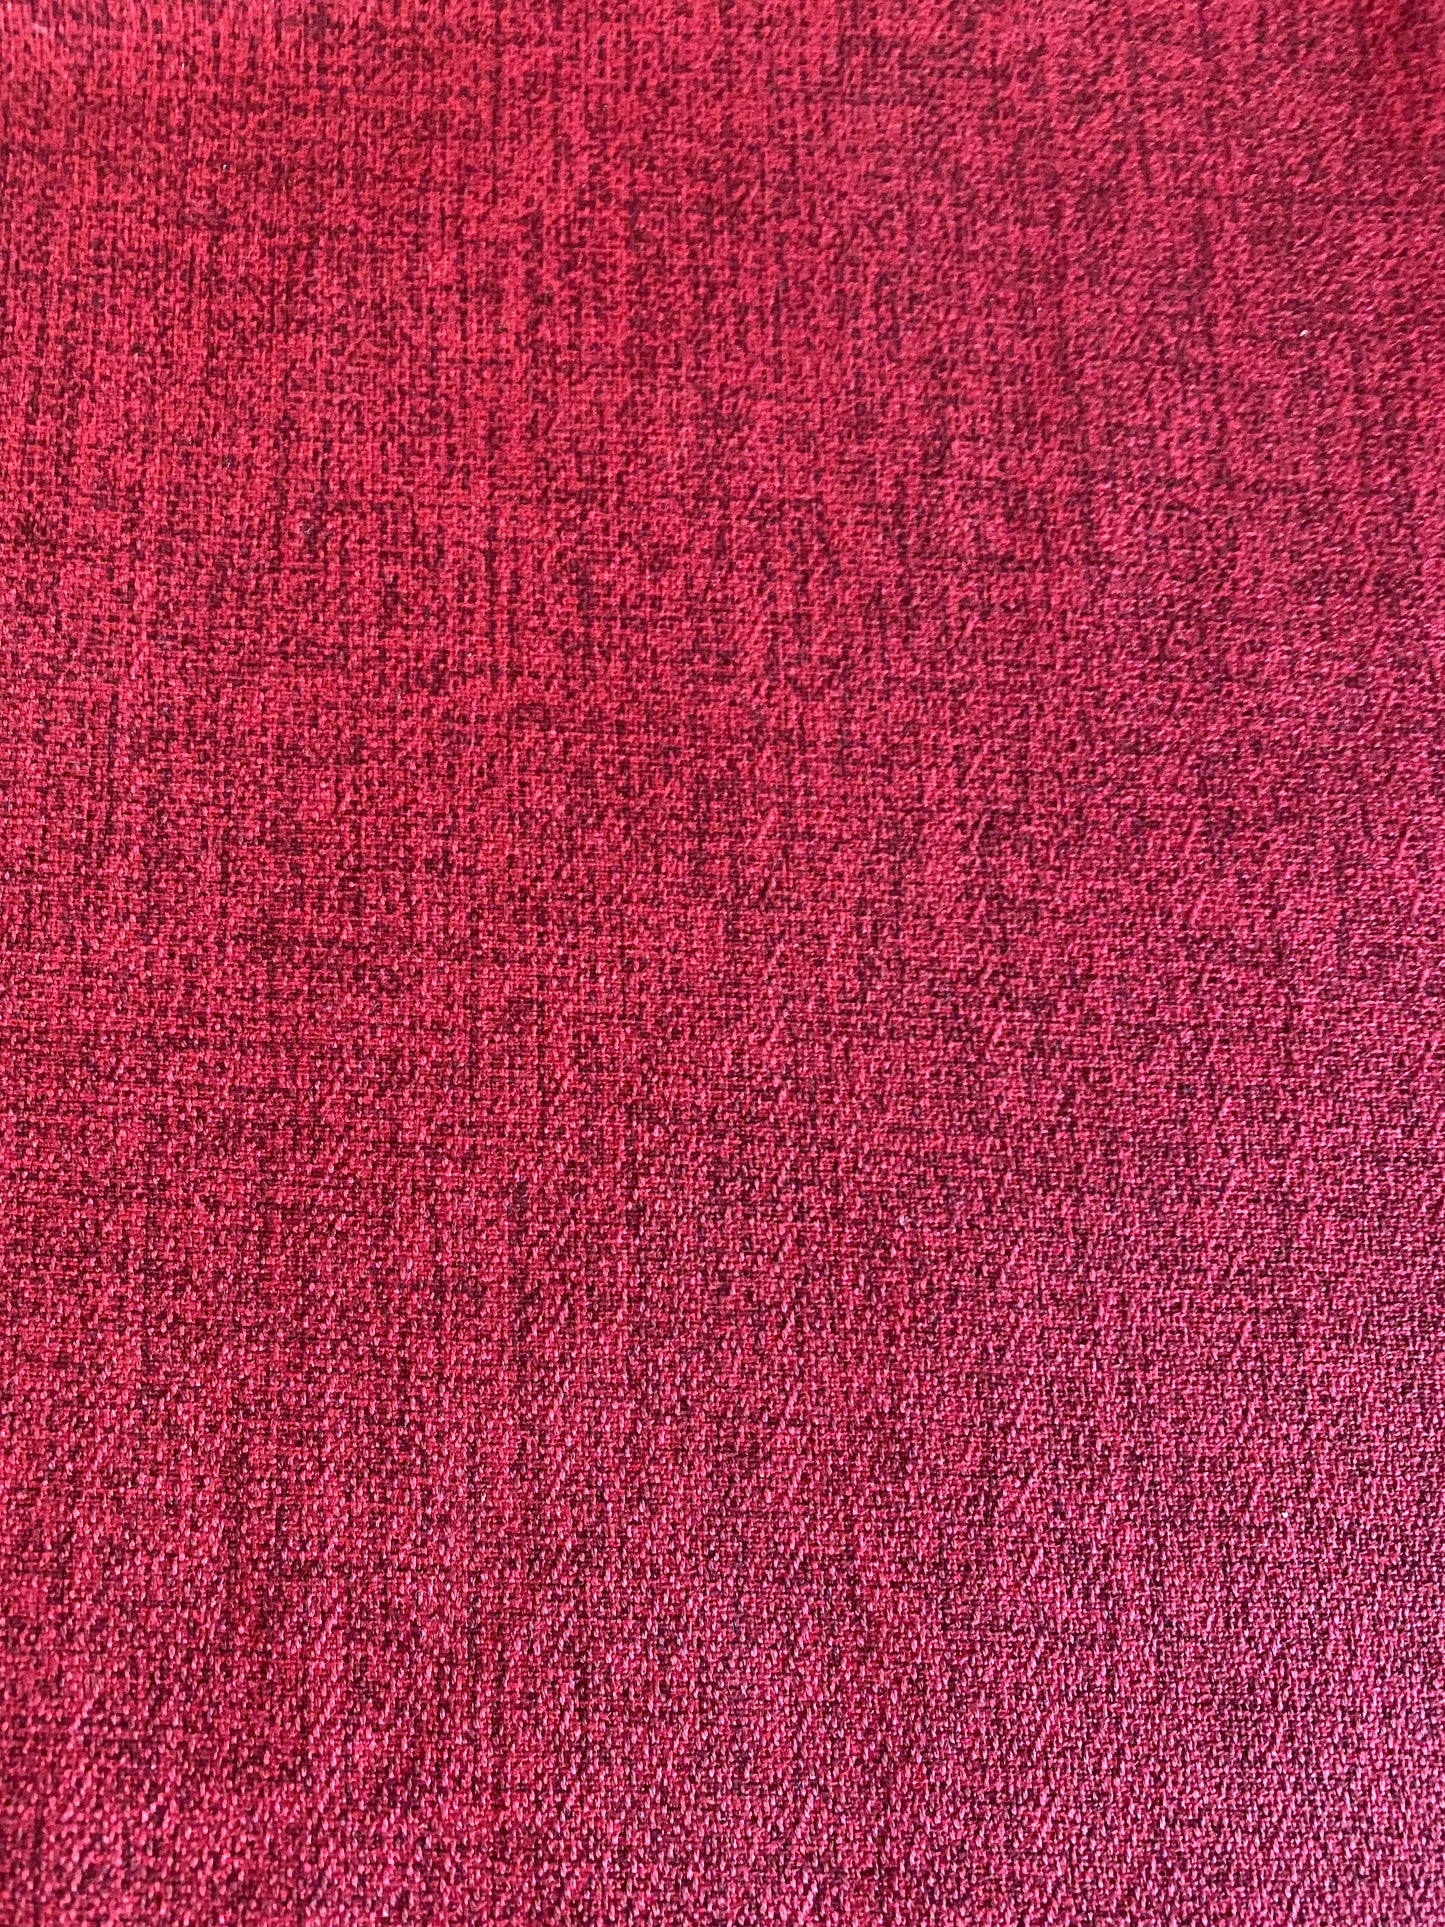 Red Solid Hawaiian Barkcloth Fabric